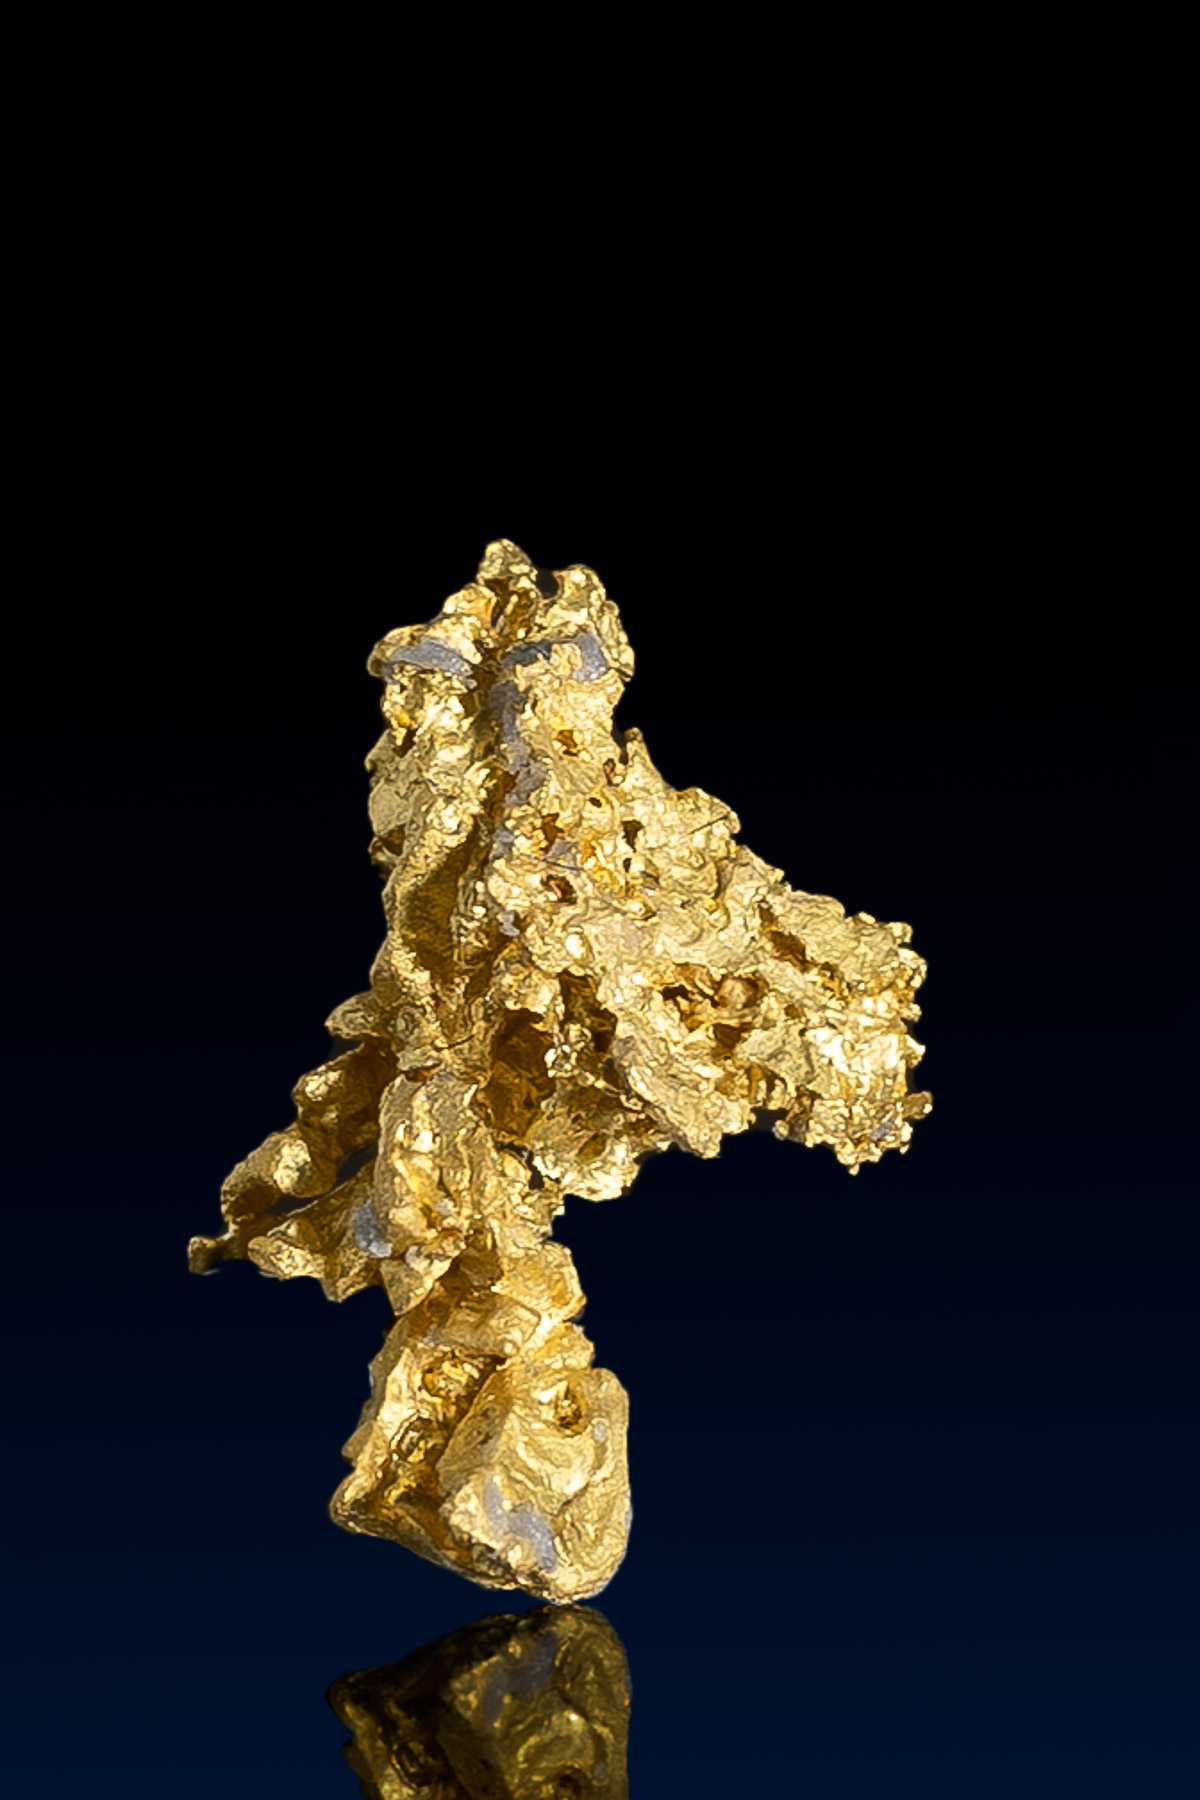 Rugged Nevada Natural Gold Nugget - 0.79 grams